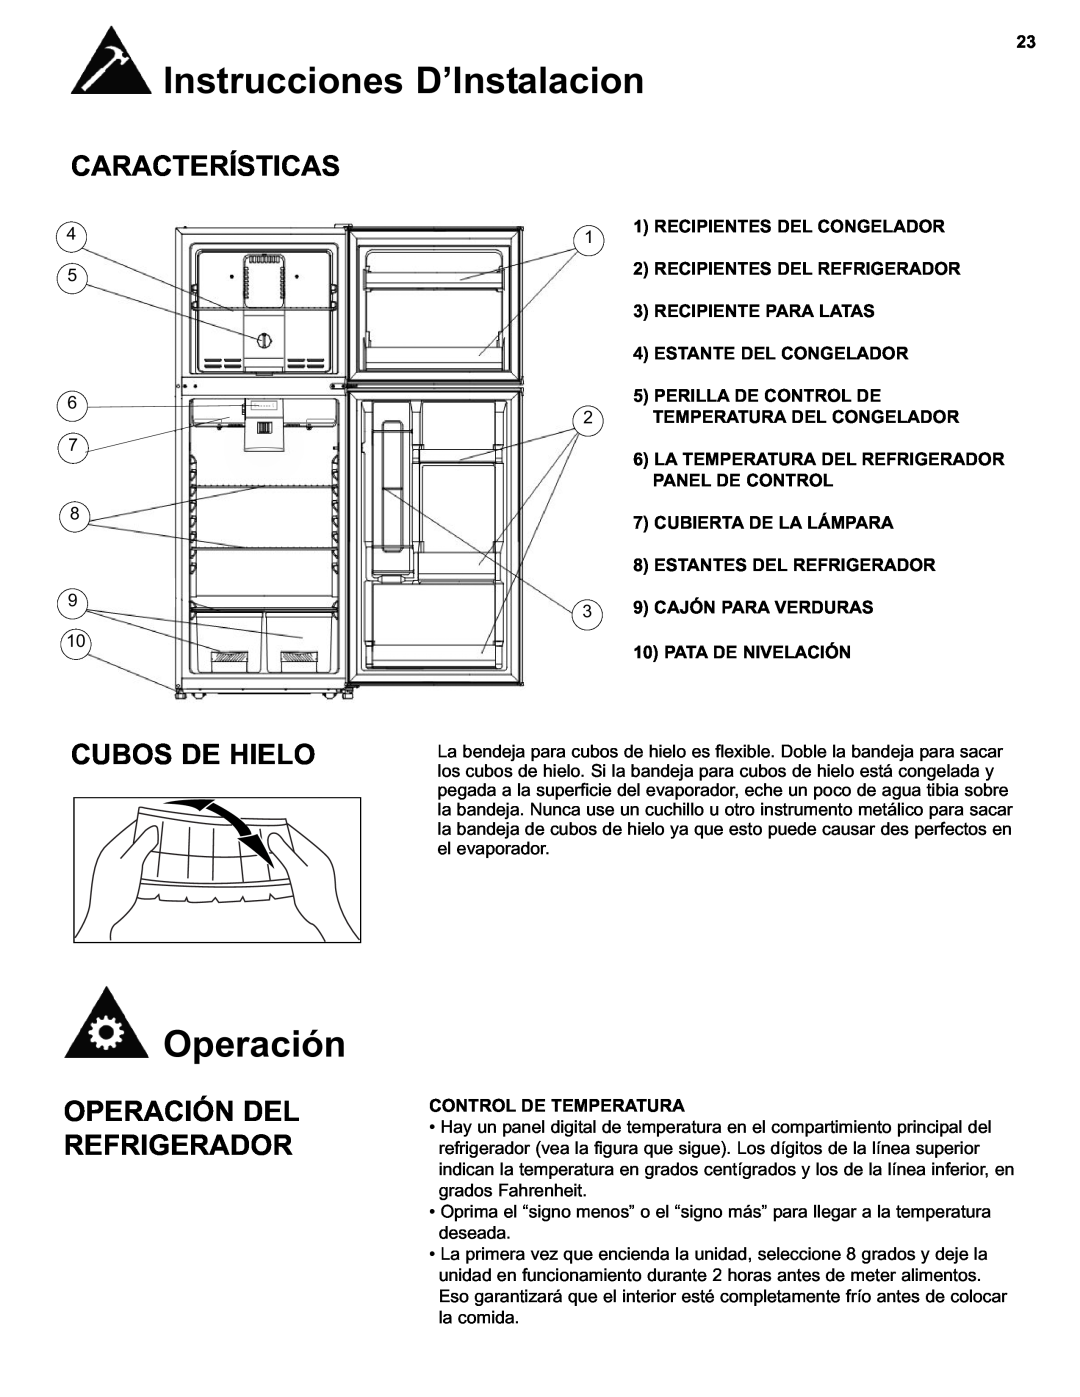 Danby DFF280WDB manual Características, Cubos De Hielo, Operación Del Refrigerador, Perilla De Control De 